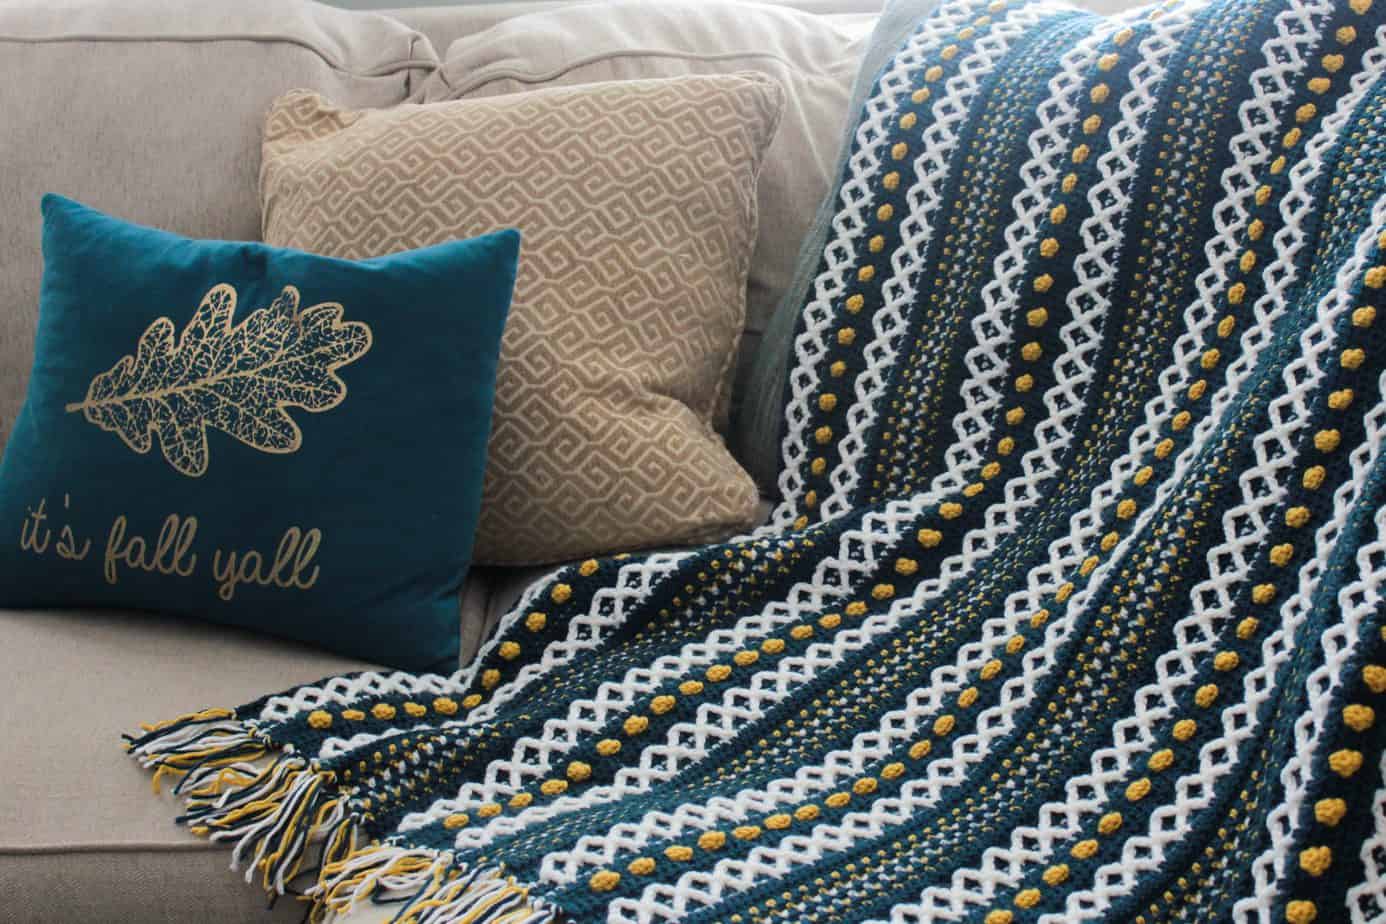 modern crochet blanket pattern